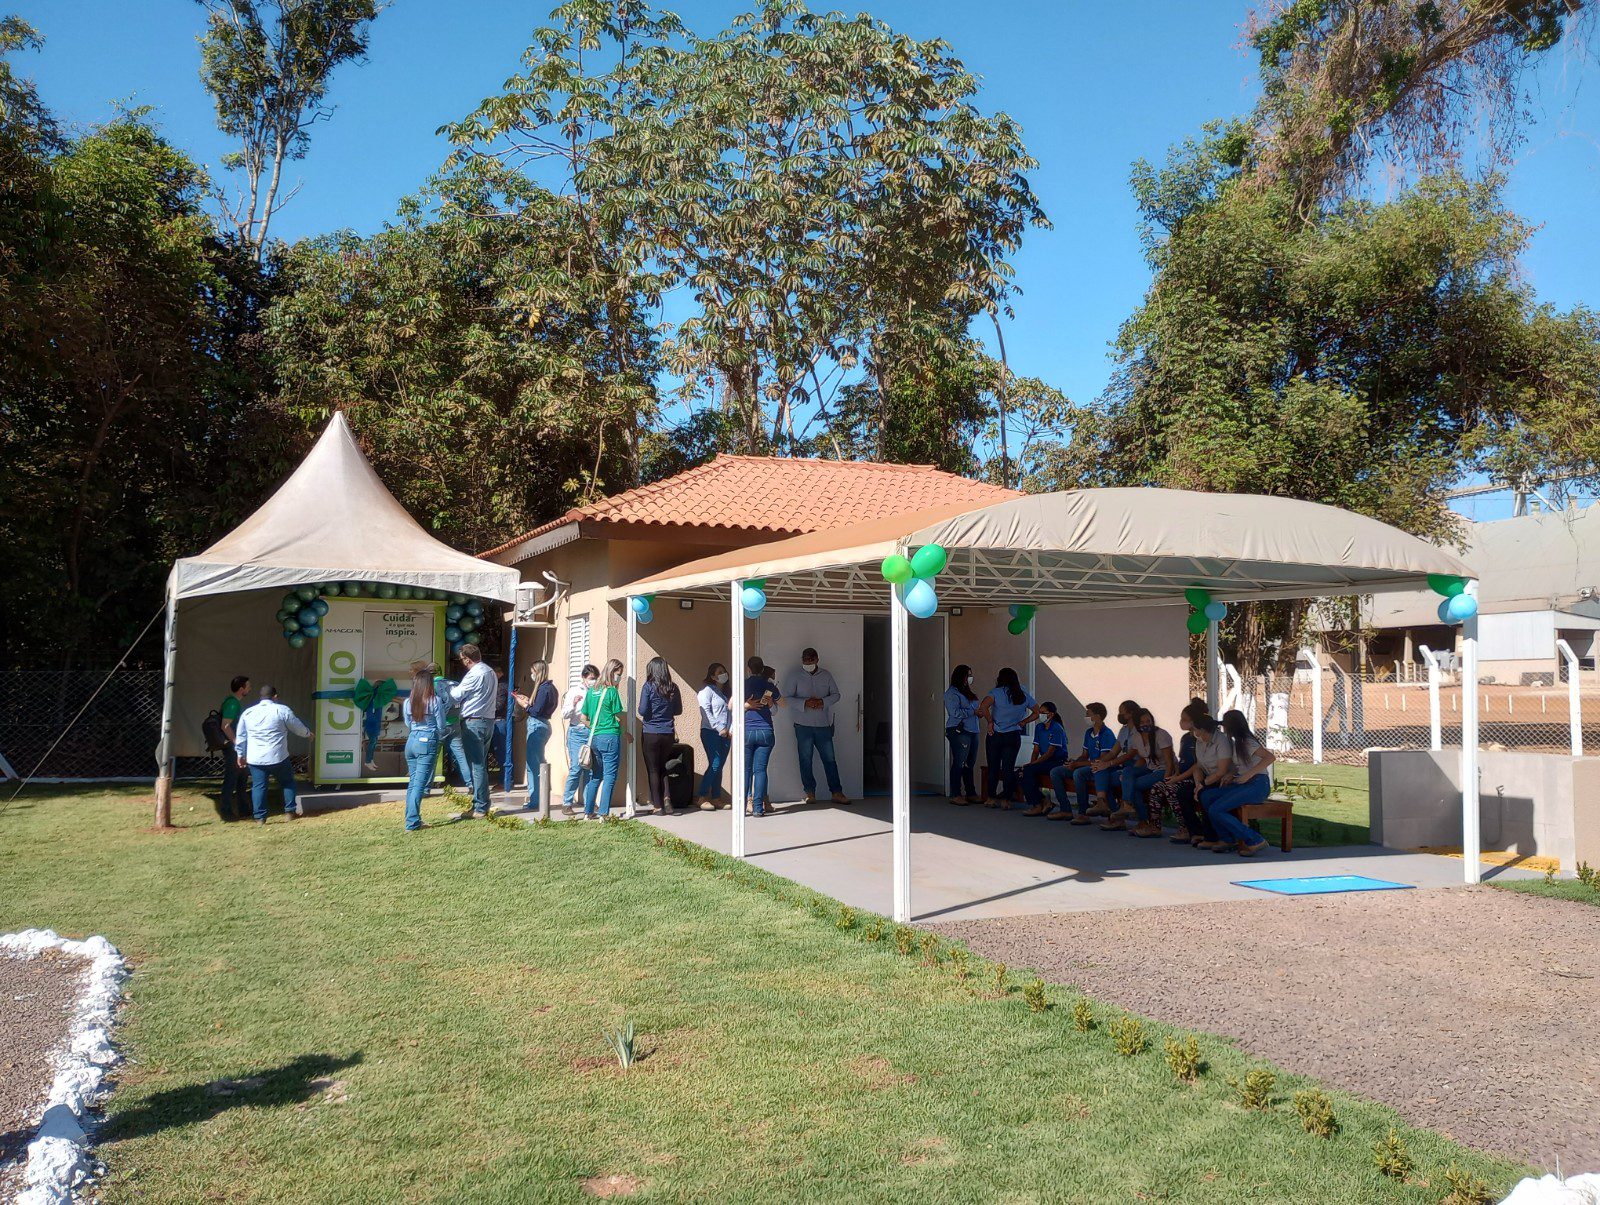 Cabine de telemedicina CAIO está instalada ao lado do ambulatório da Fazenda Tanguro e acessível a todos os colaboradores e familiares da unidade